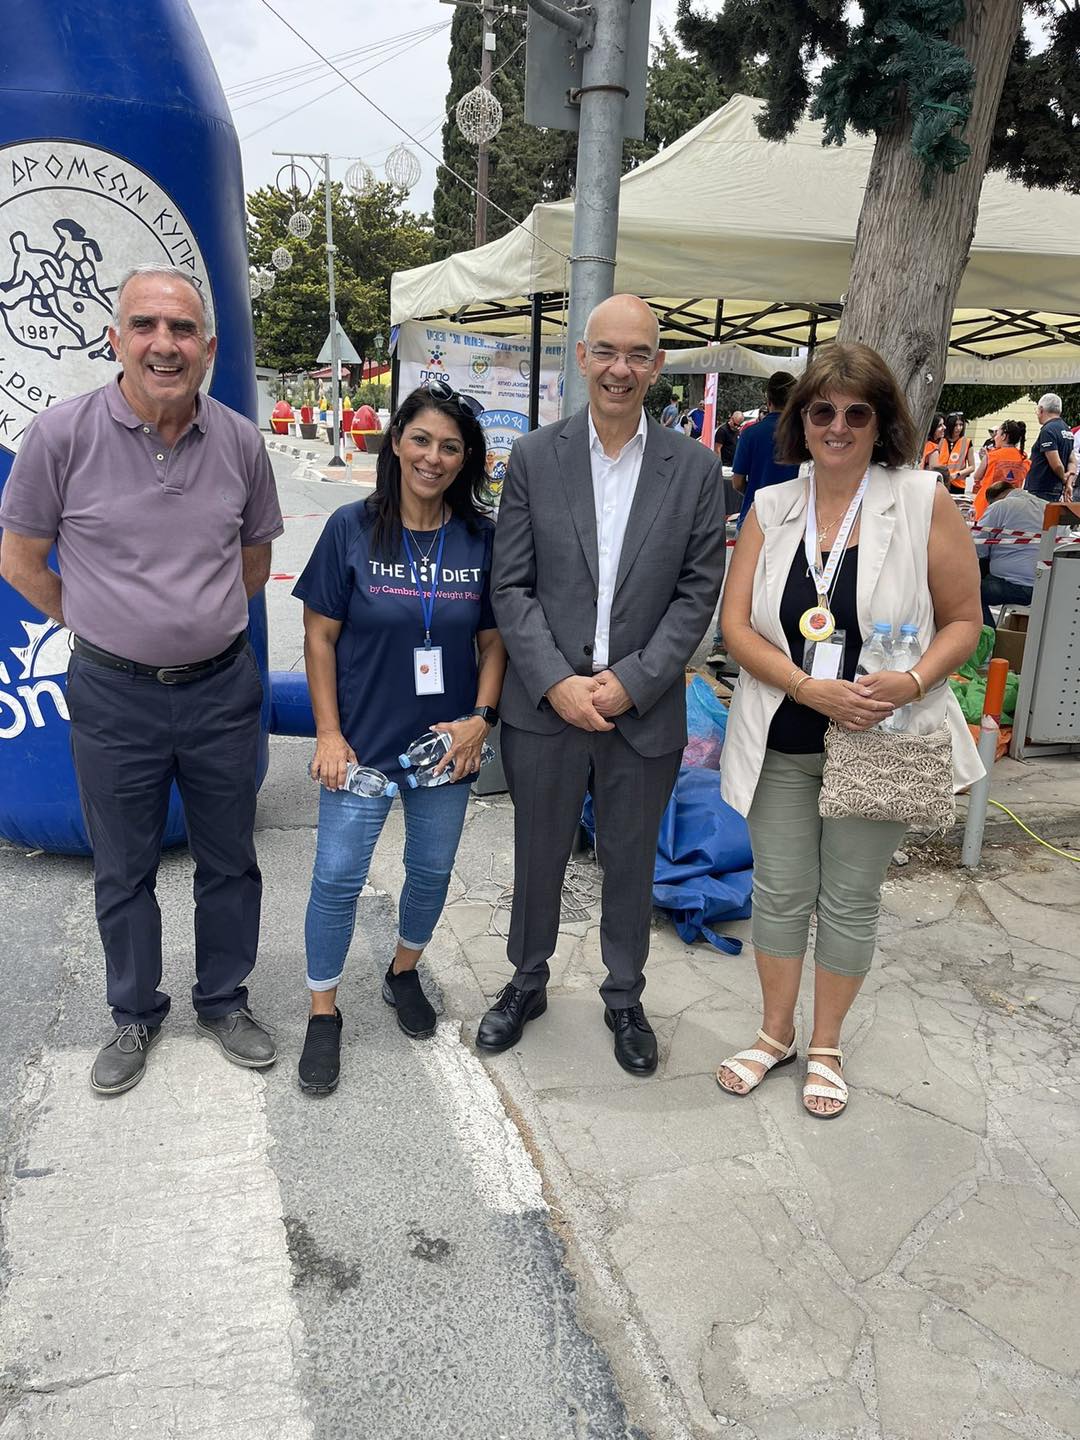 Με επιτυχία και φέτος οι καθιερωμένοι αγώνες δρόμου στην Πλατεία Αγίας Παρασκευής, που διοργανώνουν ο Δήμος Λιβαδιών, σε συνεργασία με το Σωματείο Δρομέων Κύπρου “Περικλής Δημητρίου”